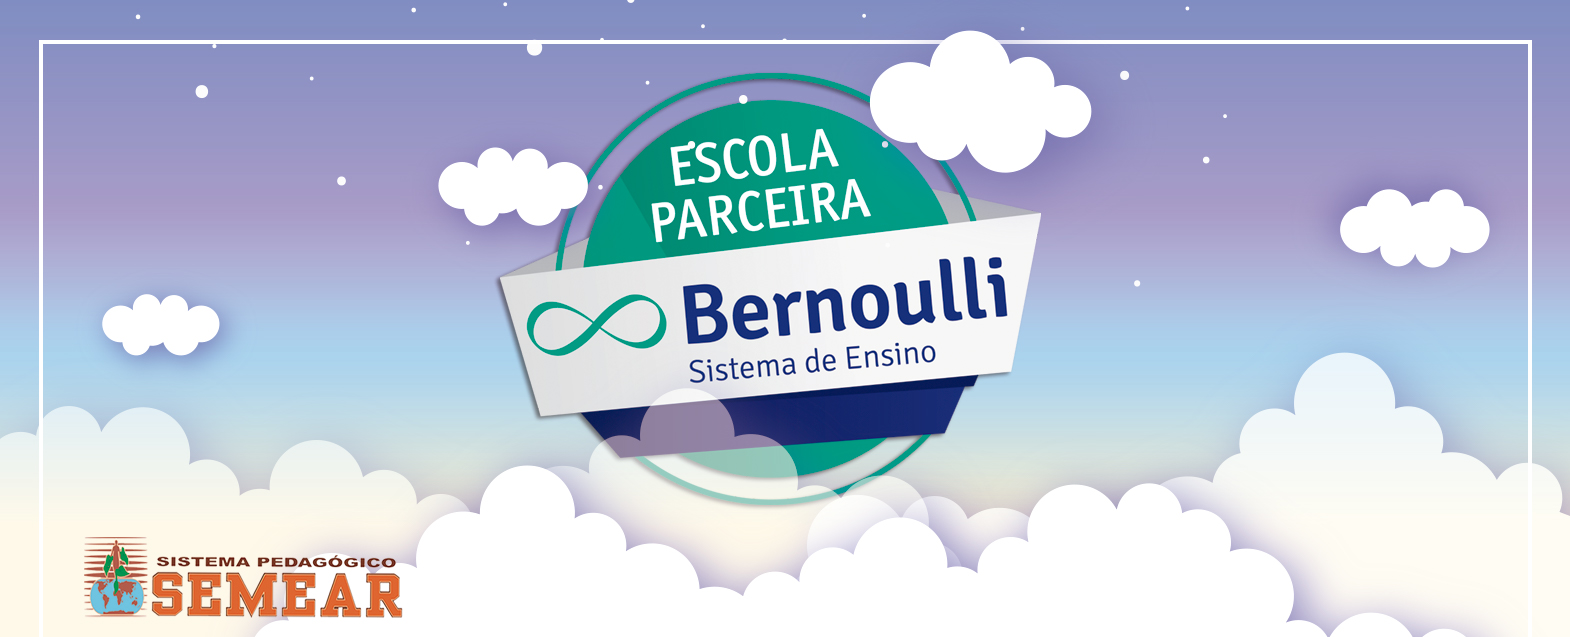 002_SITE_Sistema de Ensino Bernoulli